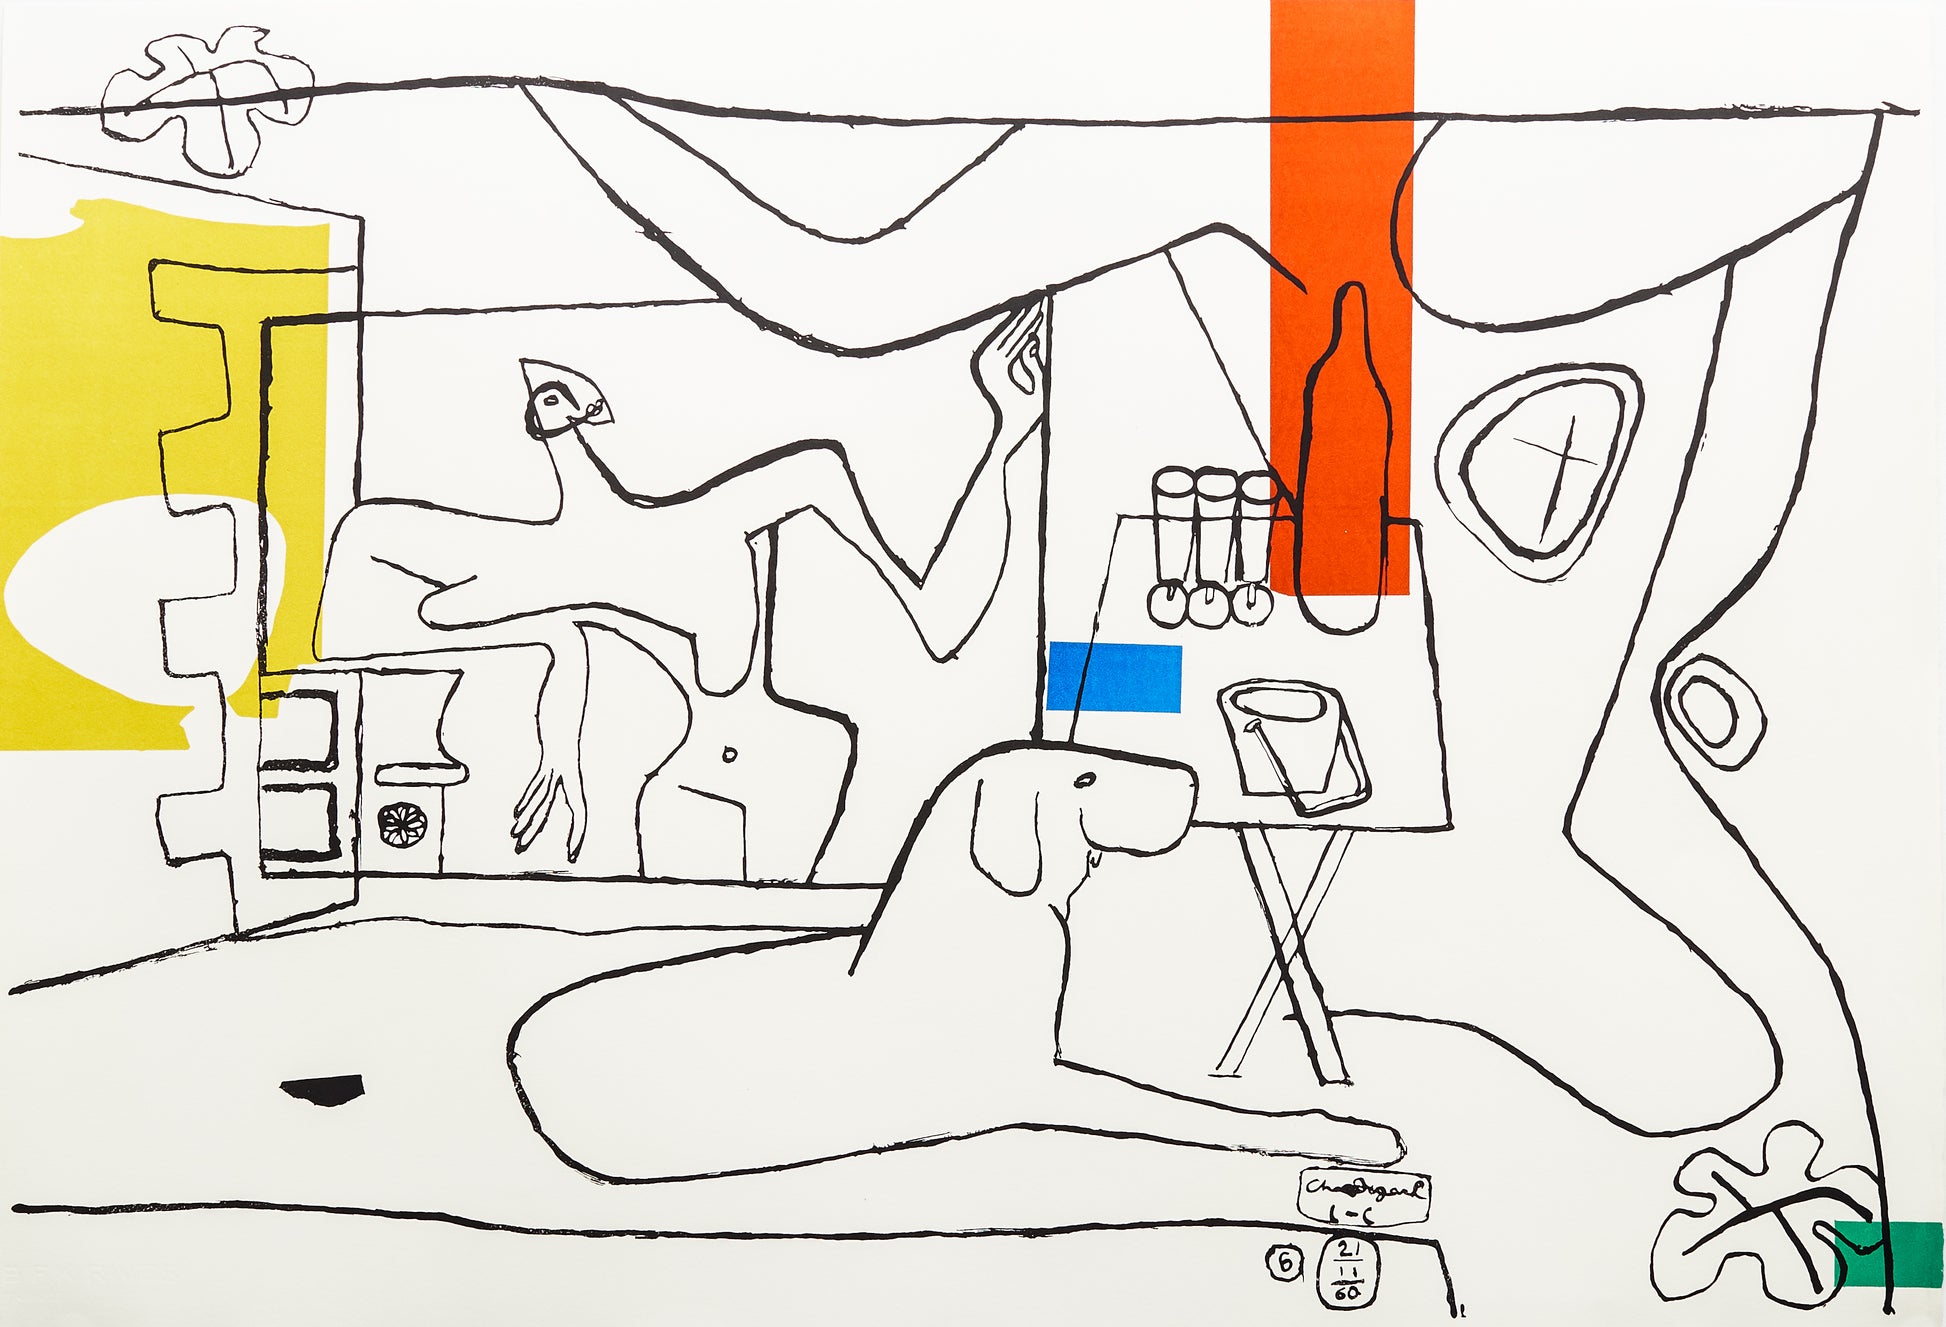 Trois Verres d'aperitif by Le Corbusier, 1962 - Mourlot Editions - Fine_Art - Poster - Lithograph - Wall Art - Vintage - Prints - Original